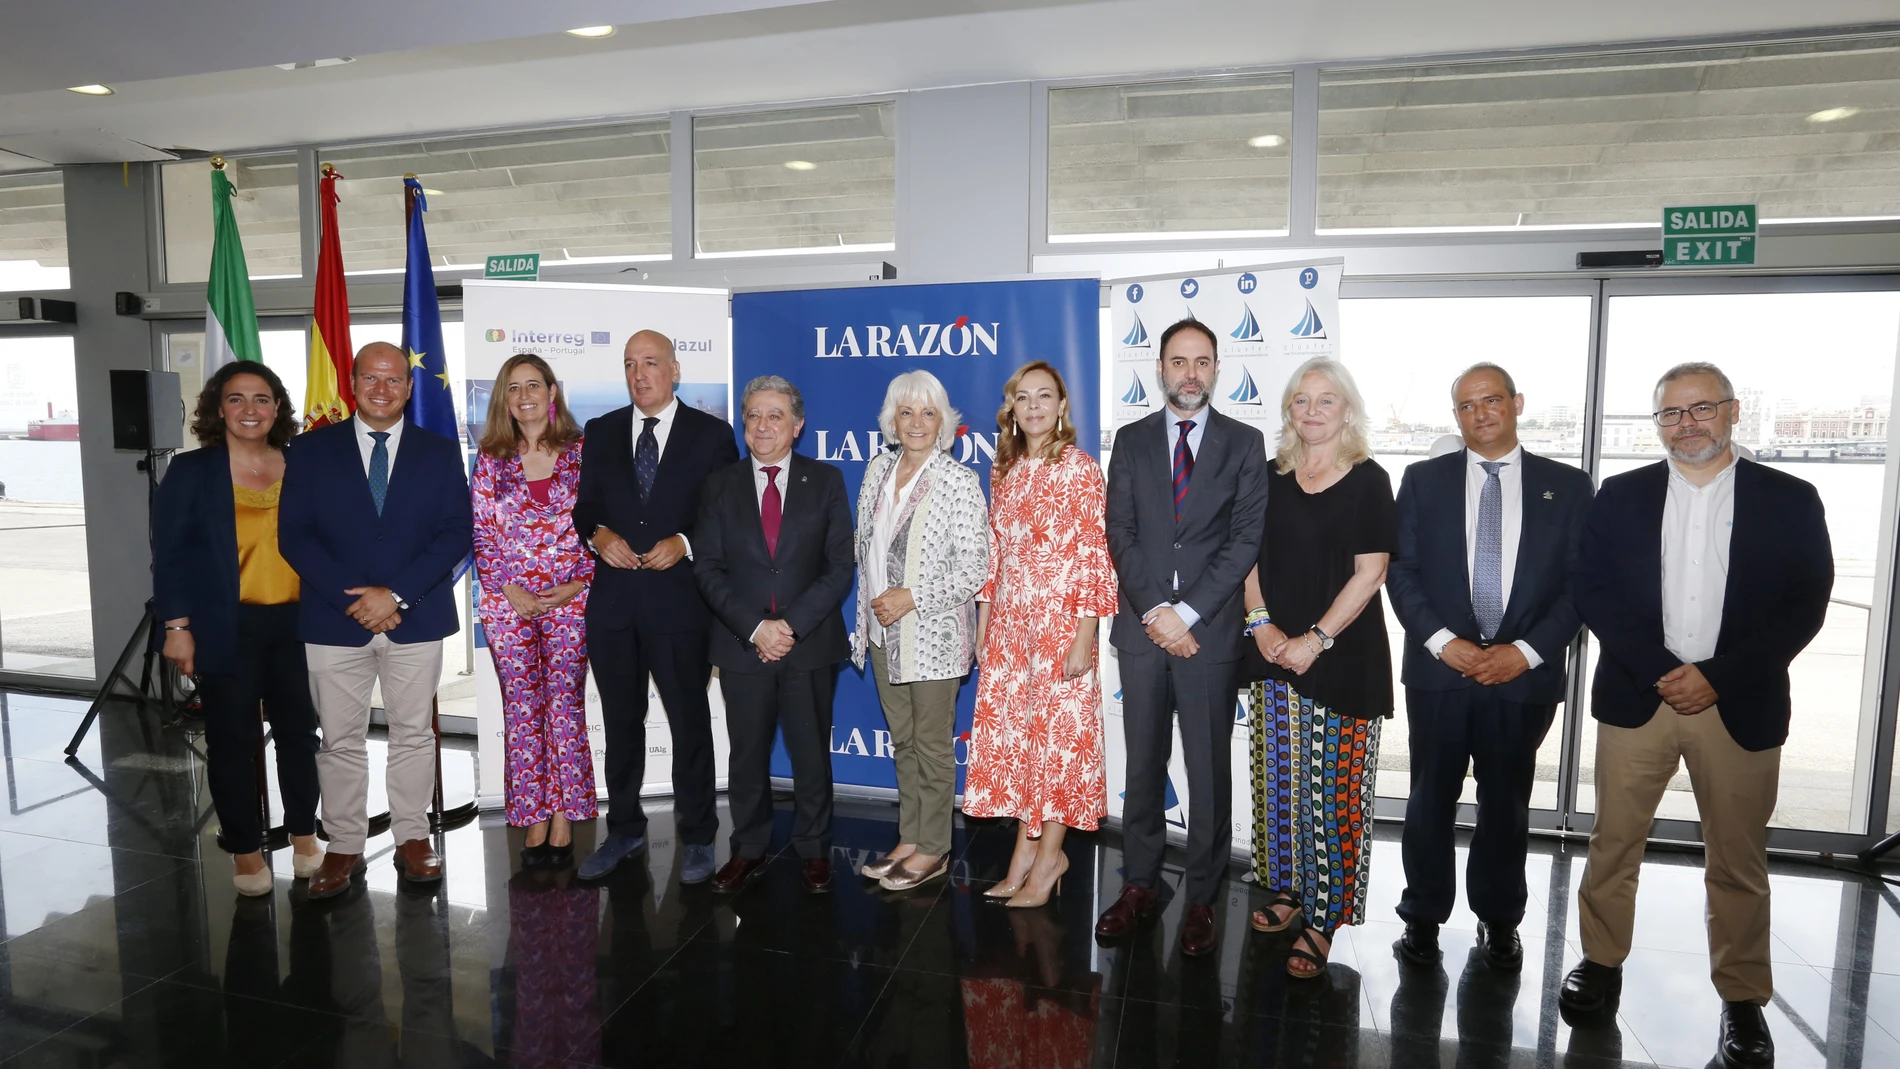 Los ponentes han debatido sobre los "Retos y oportunidades de la Economía Azul en la Andalucía Atlántica" en el desayuno informativo de LA RAZÓN y Clúster Marítimo